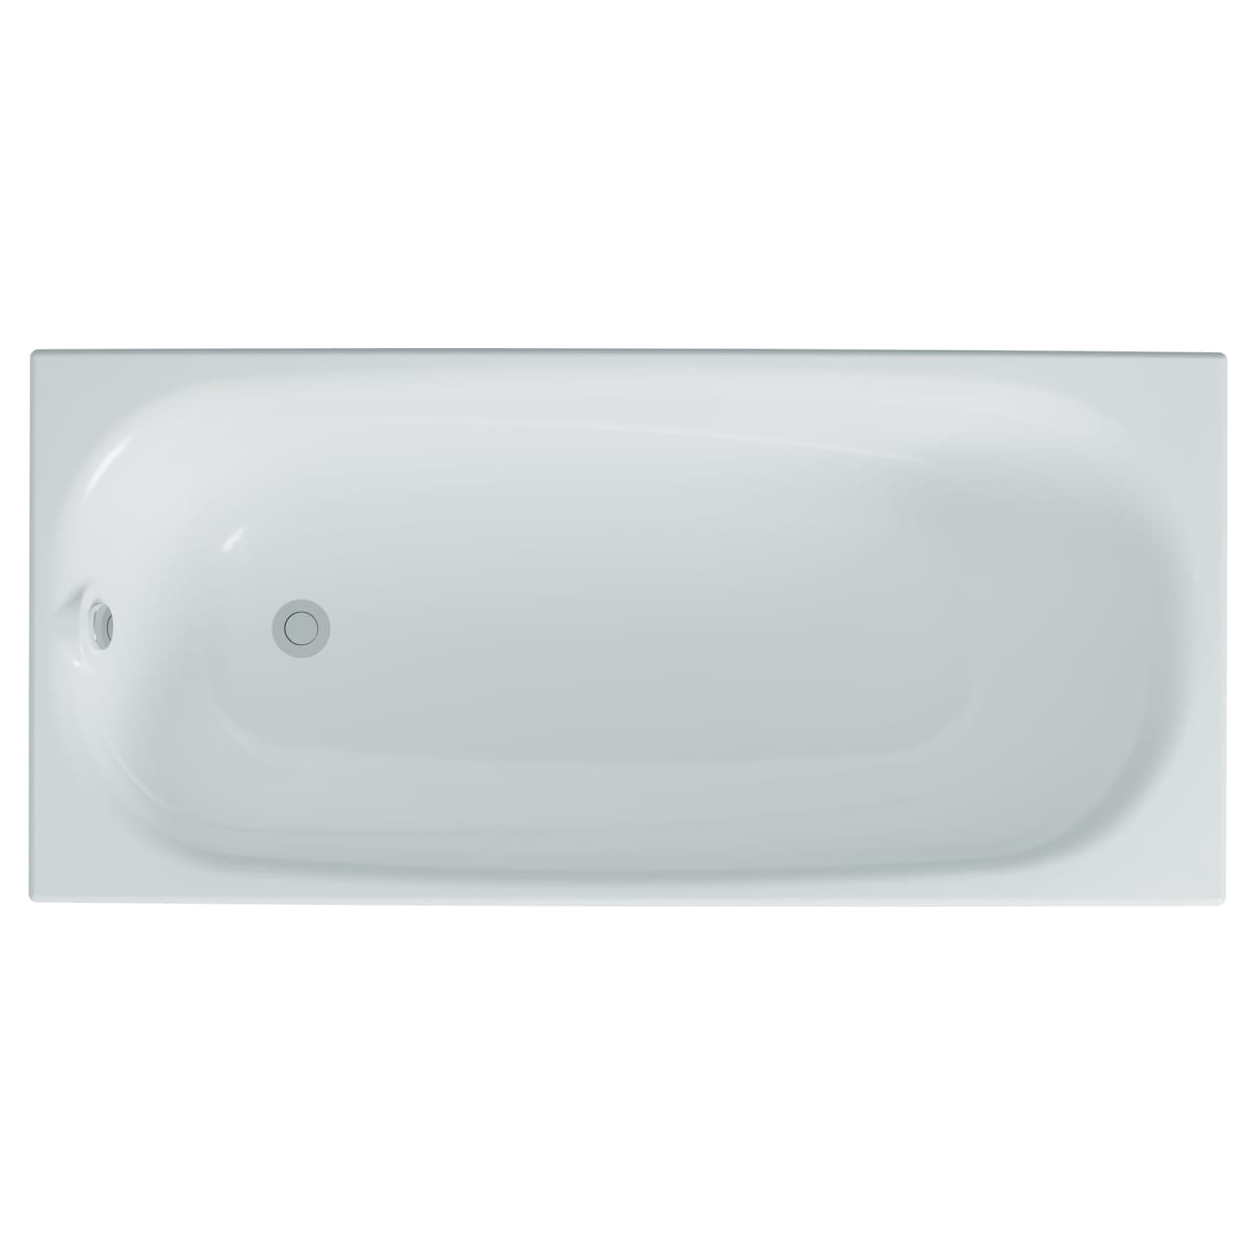 Акриловая ванна Тритон Европа 150х69.7 акриловая ванна triton ультра 160x70 щ0000017117